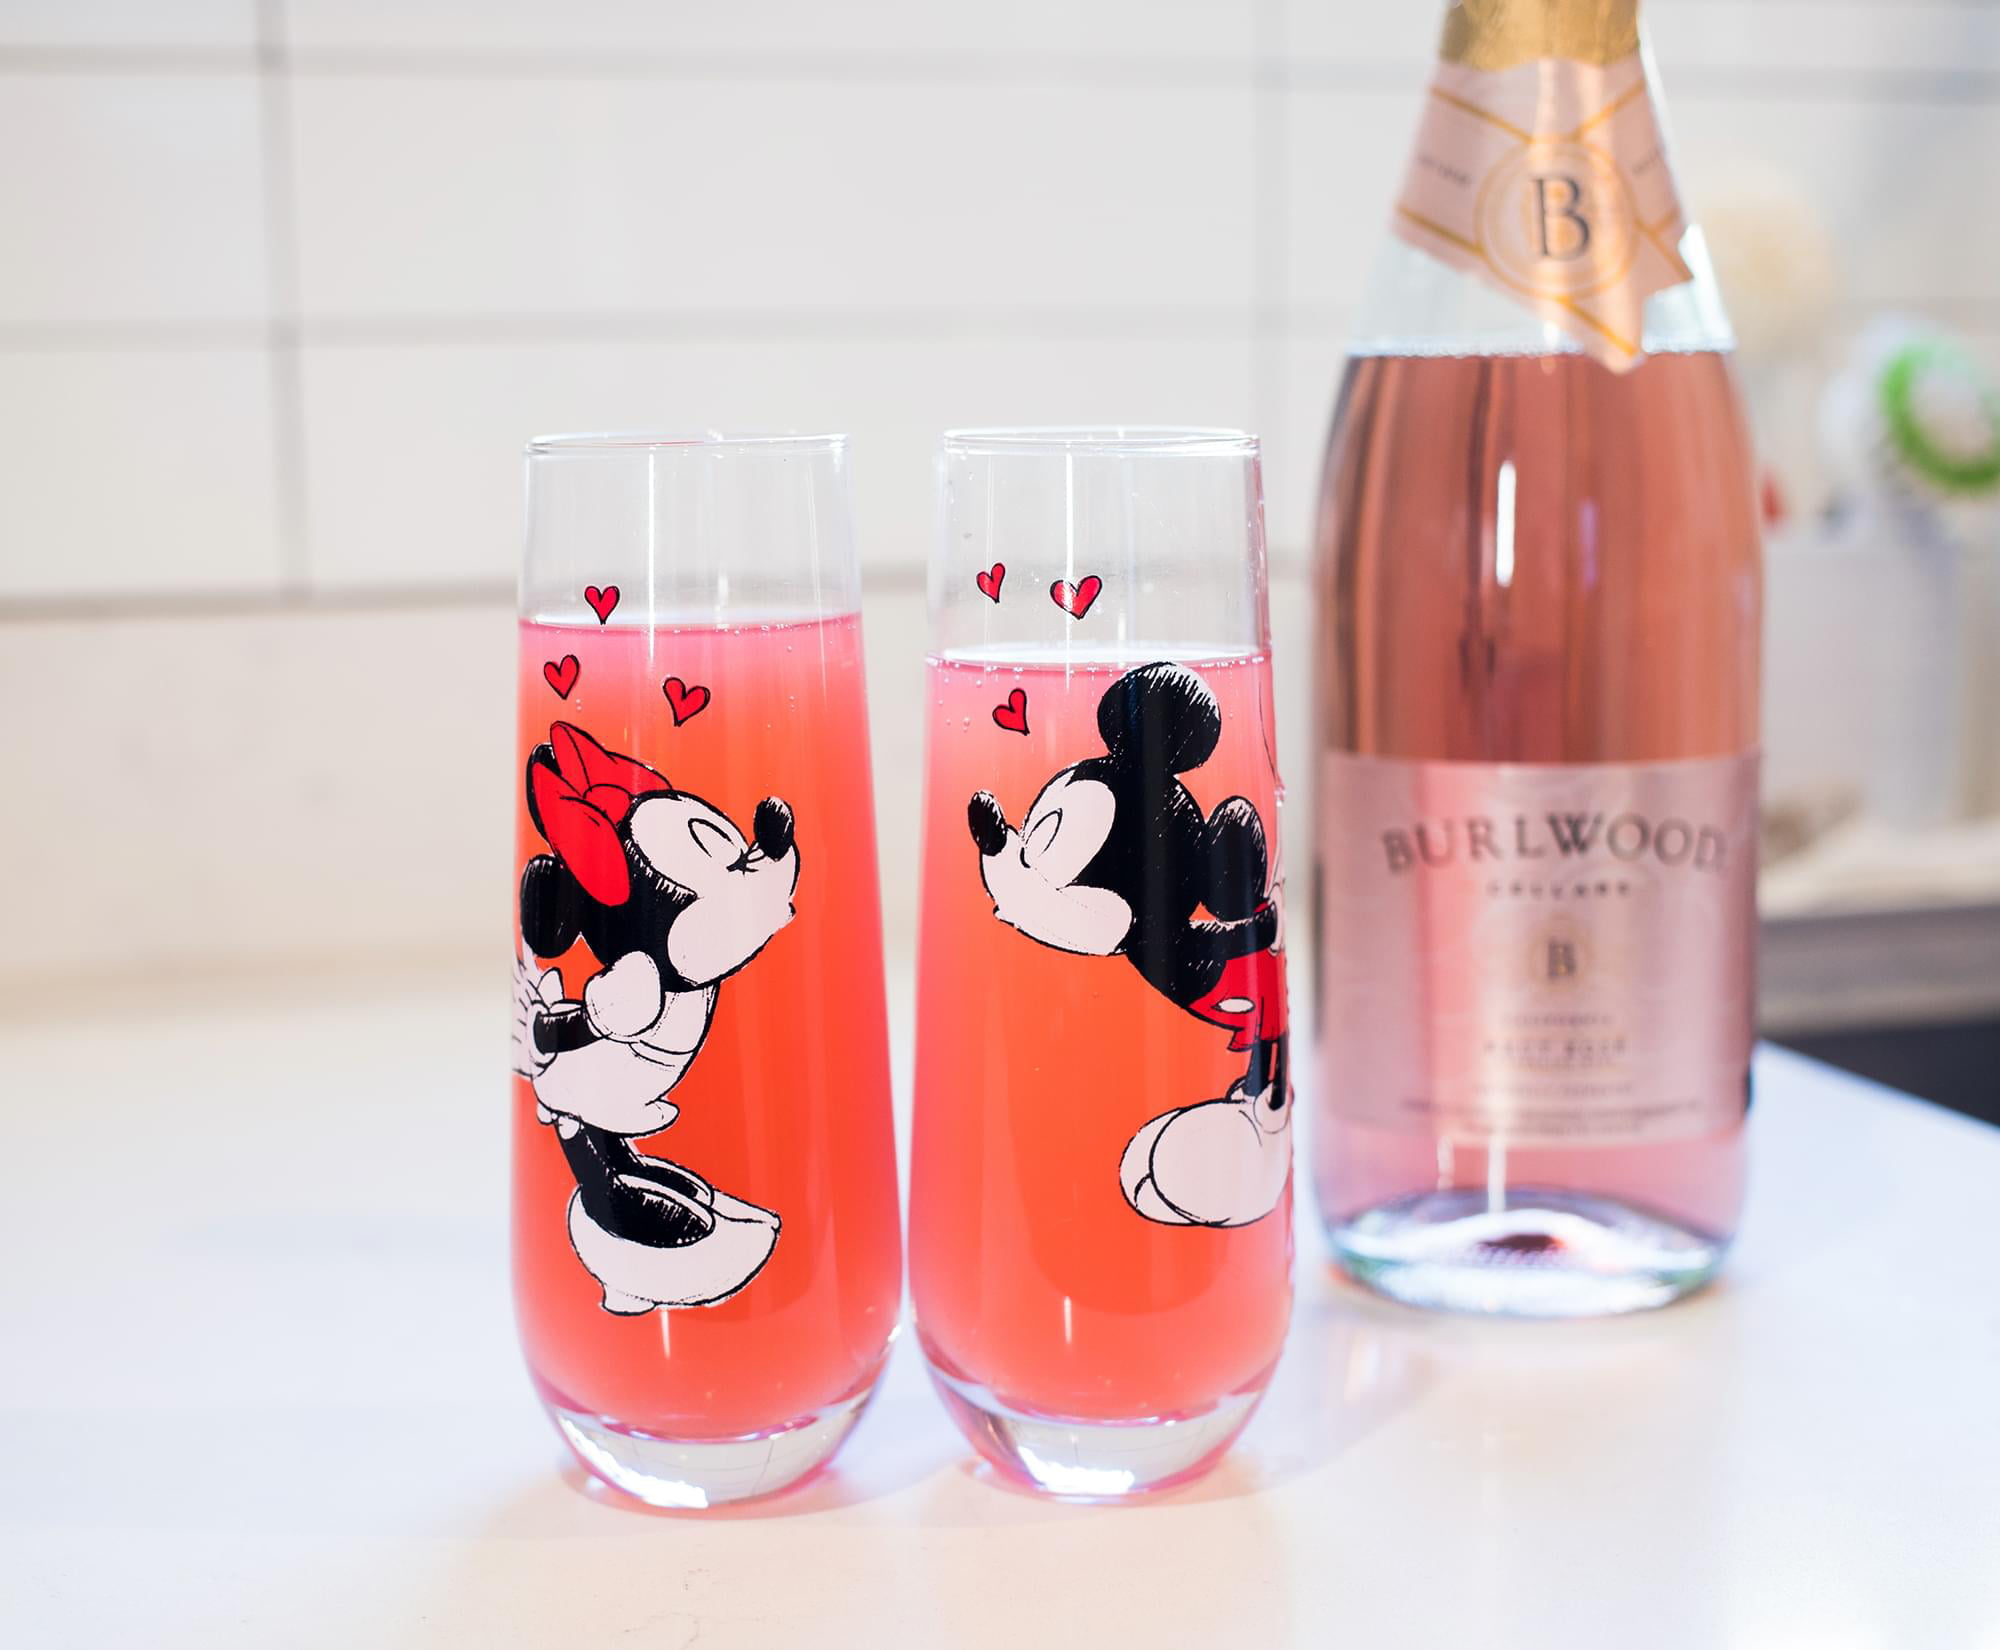 Disney 46040 Mickey & Minnie Kissing Wine Glass Set - 14.5 oz, 1